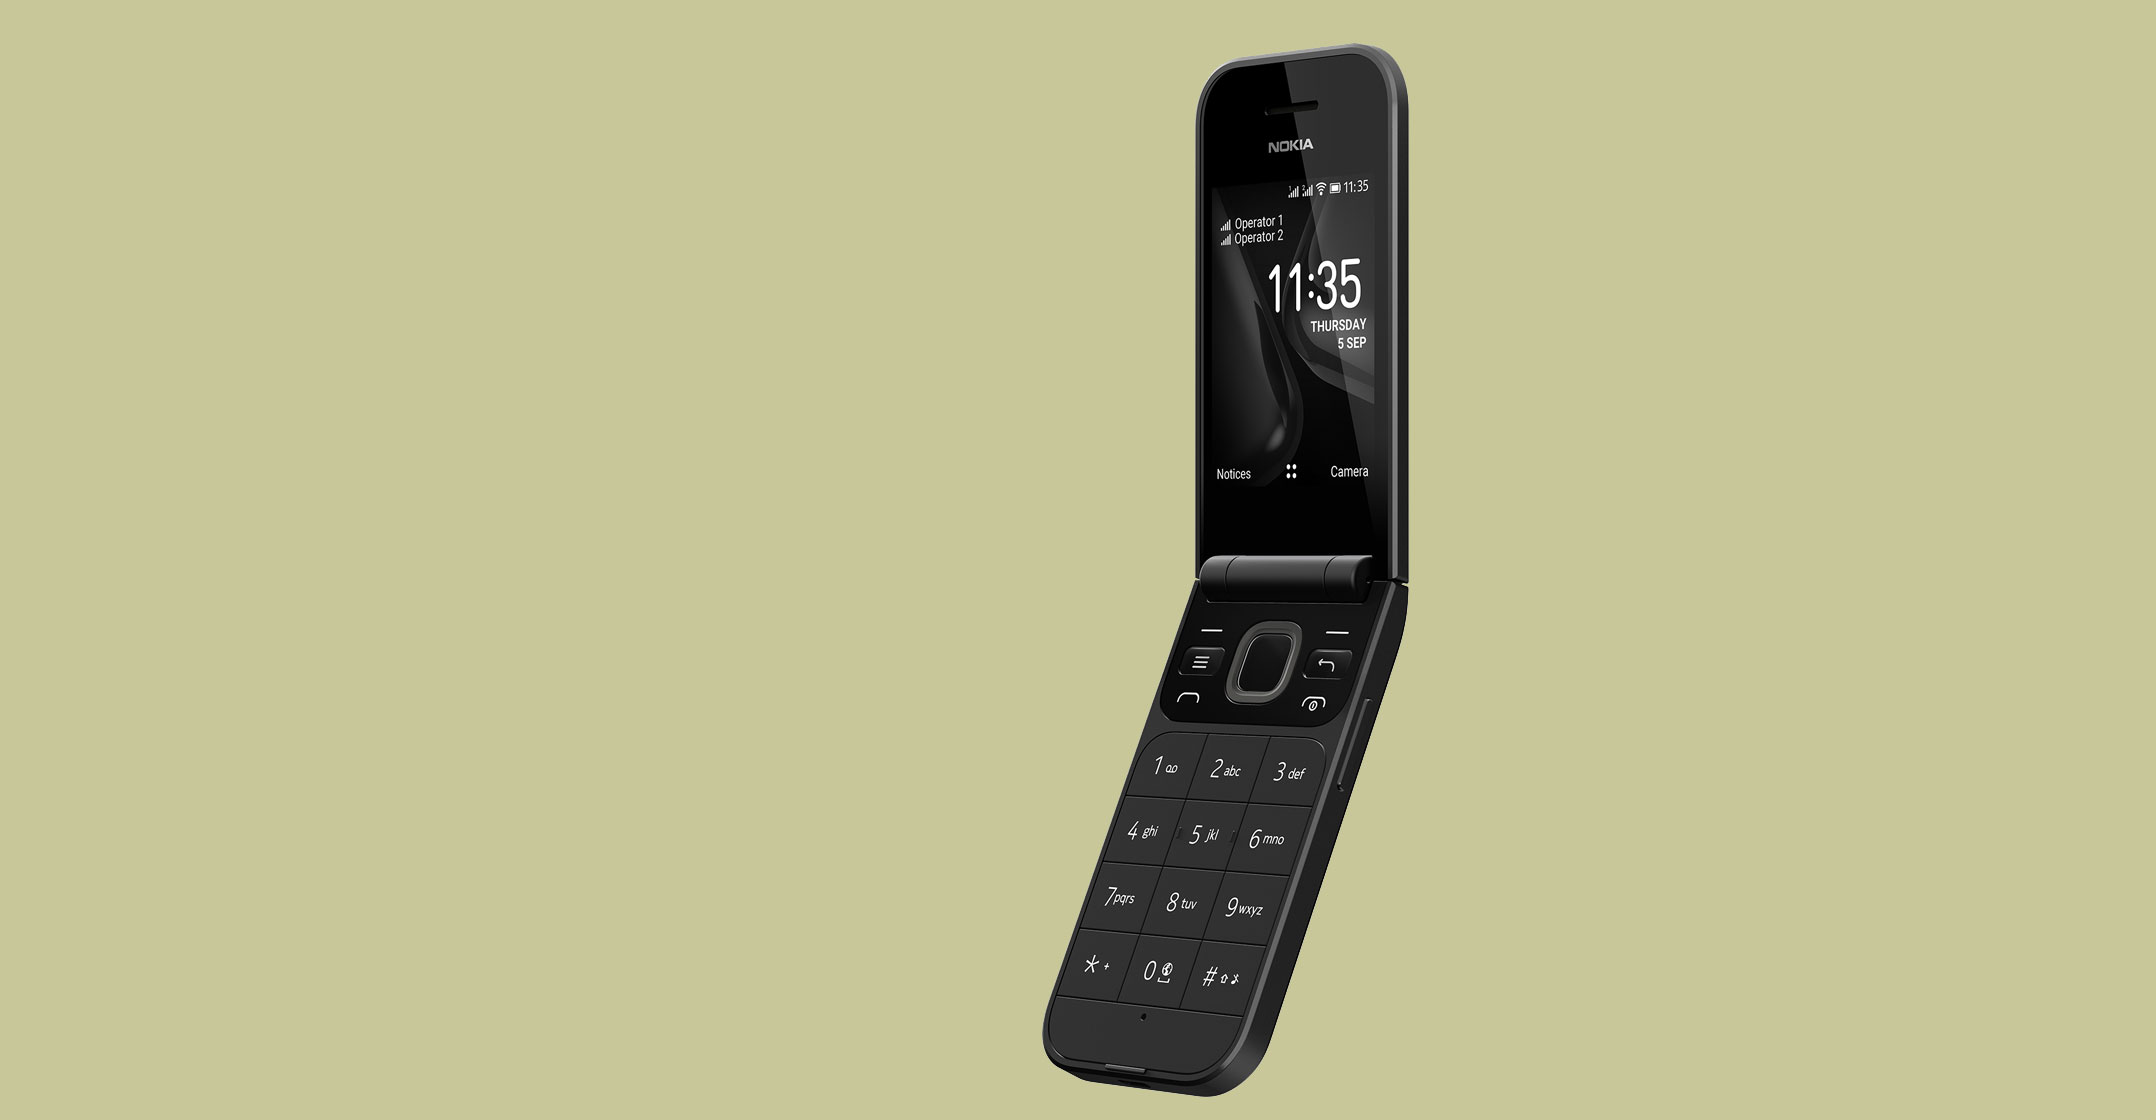 iF Design - Nokia 2720 Flip